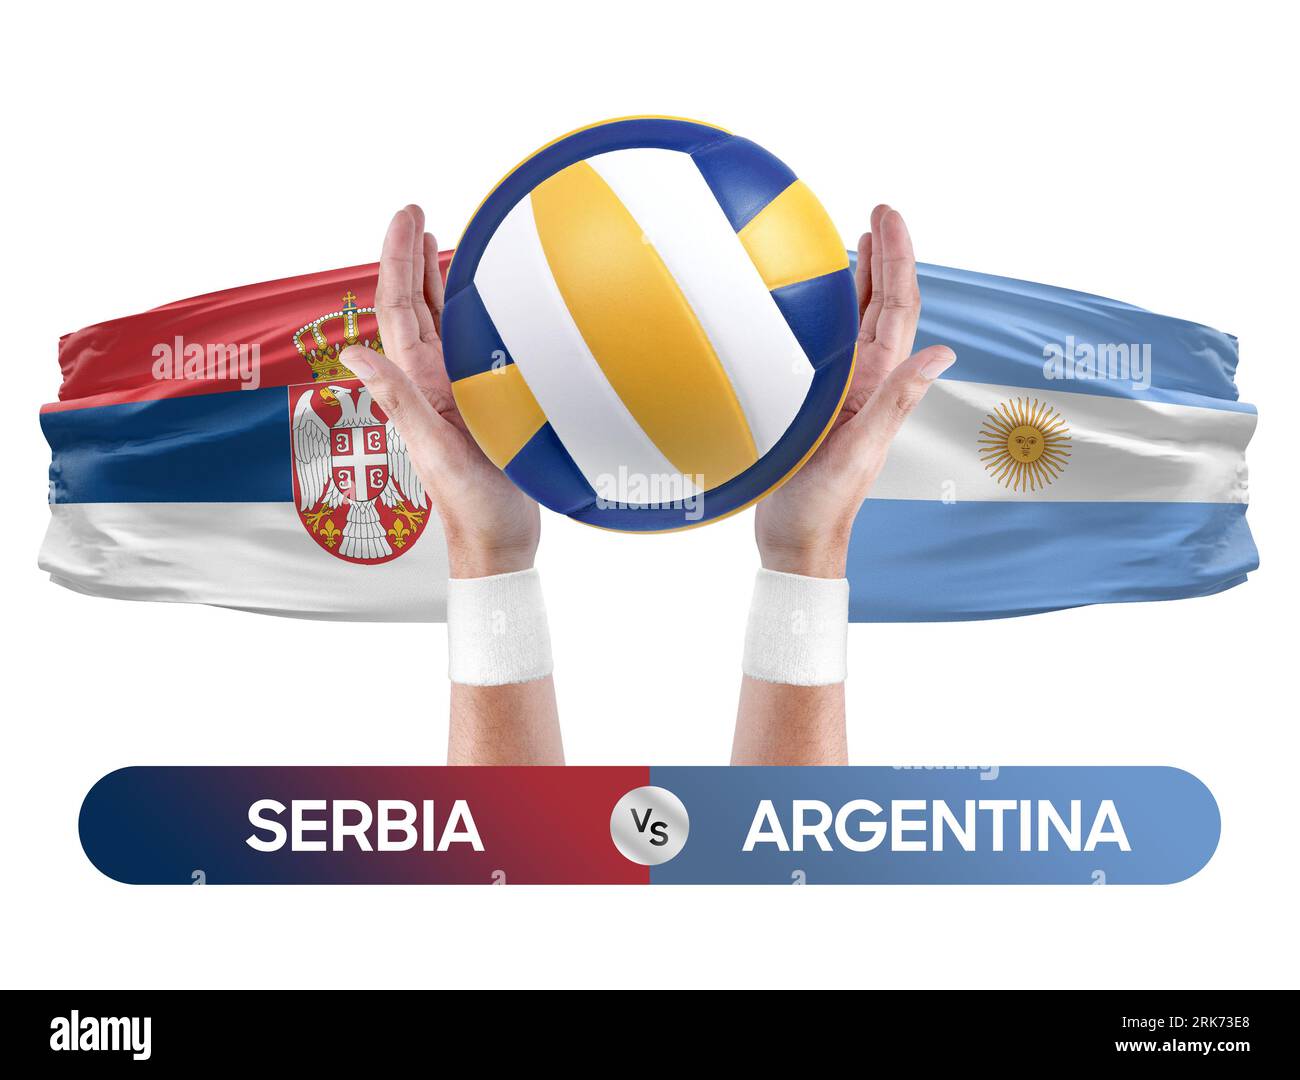 Serbien gegen Argentinien Nationalmannschaften Volleyball Volleyballspiel Wettbewerbskonzept. Stockfoto